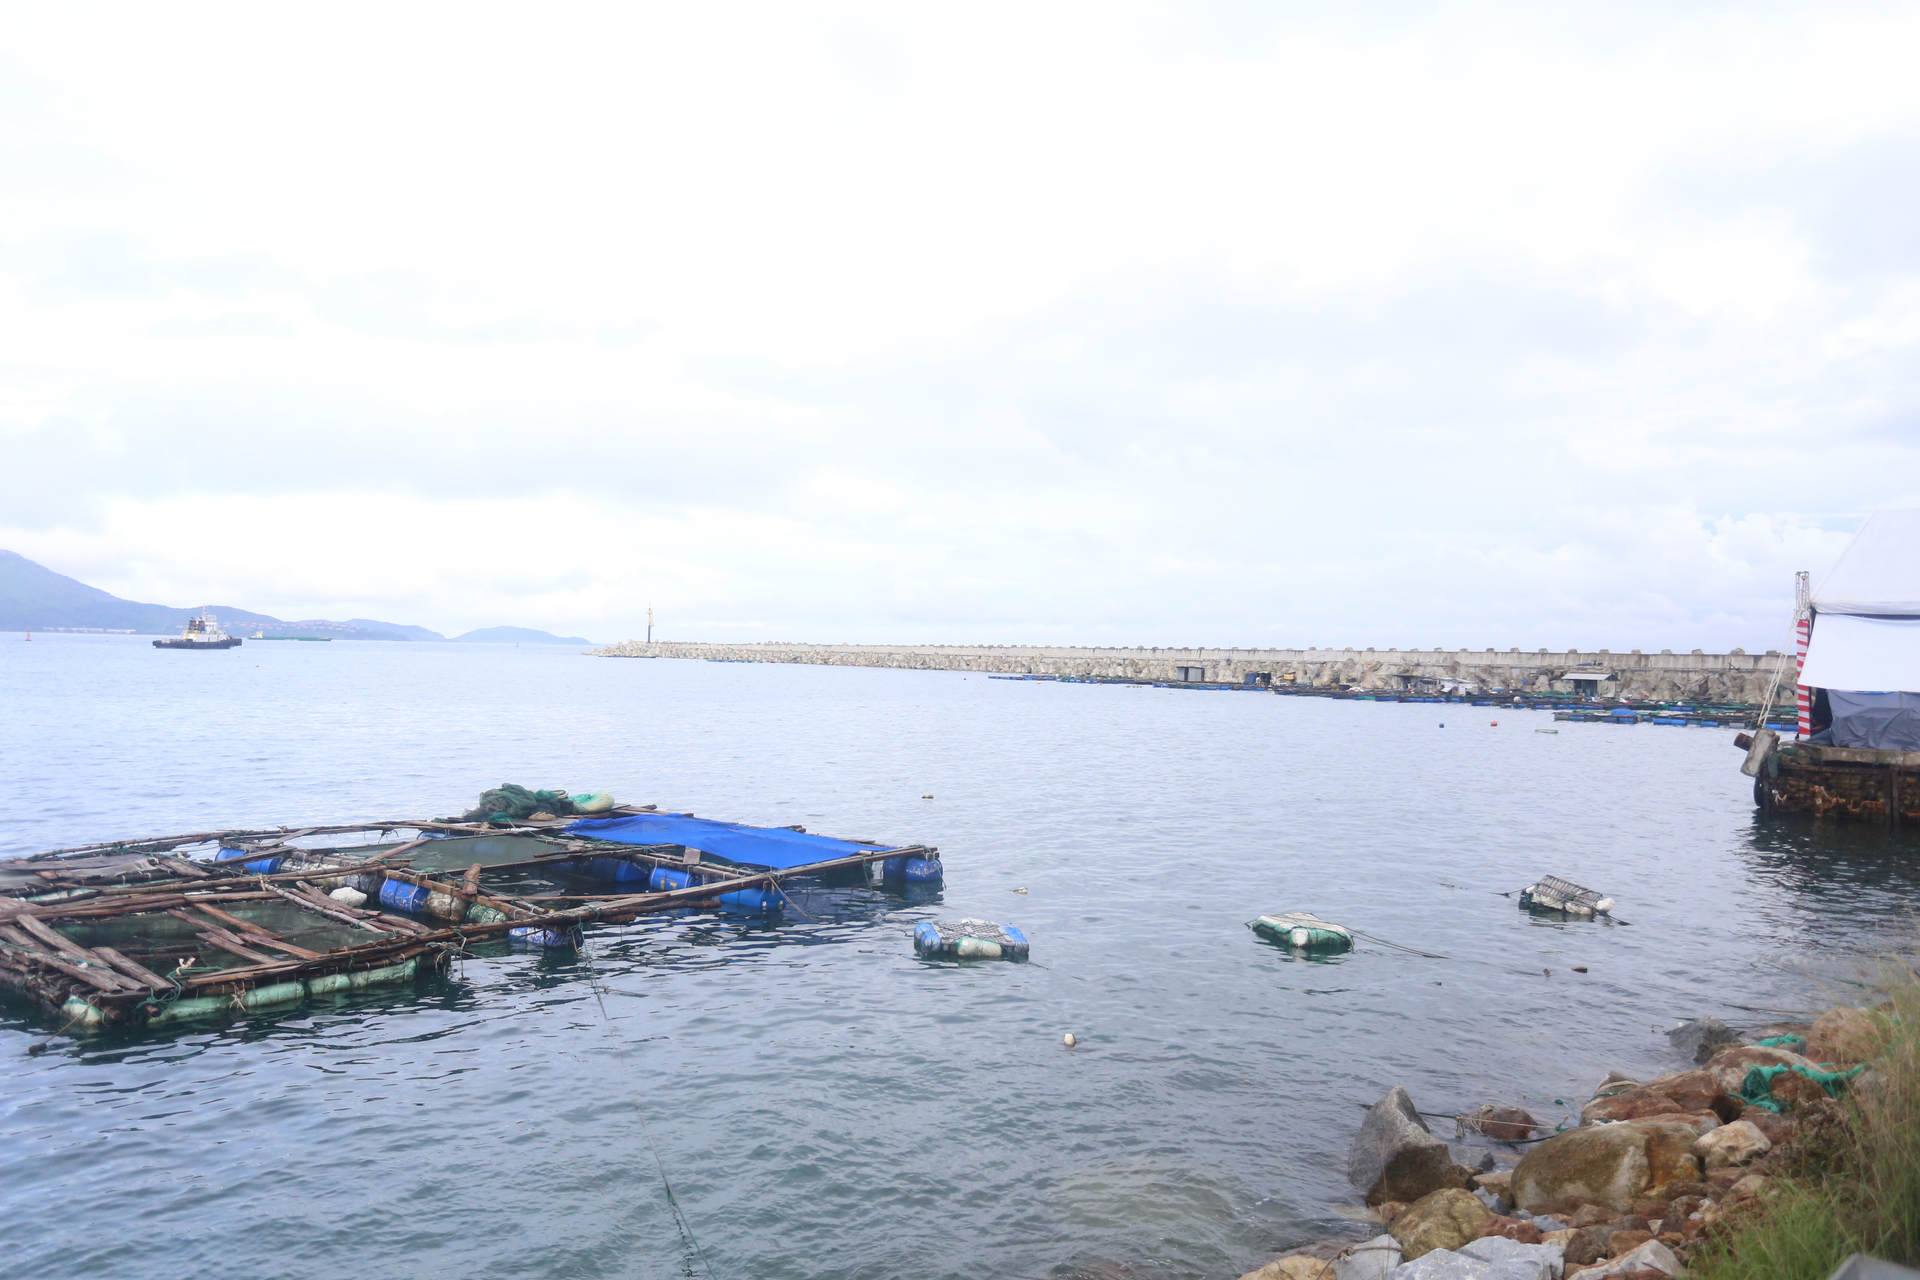 Cách không xa địa điểm nhận chìm chất thải là khu vực đánh bắt, nuôi trồng thủy sản truyền thống của ngư dân Thừa Thiên - Huế. Ảnh: MT.